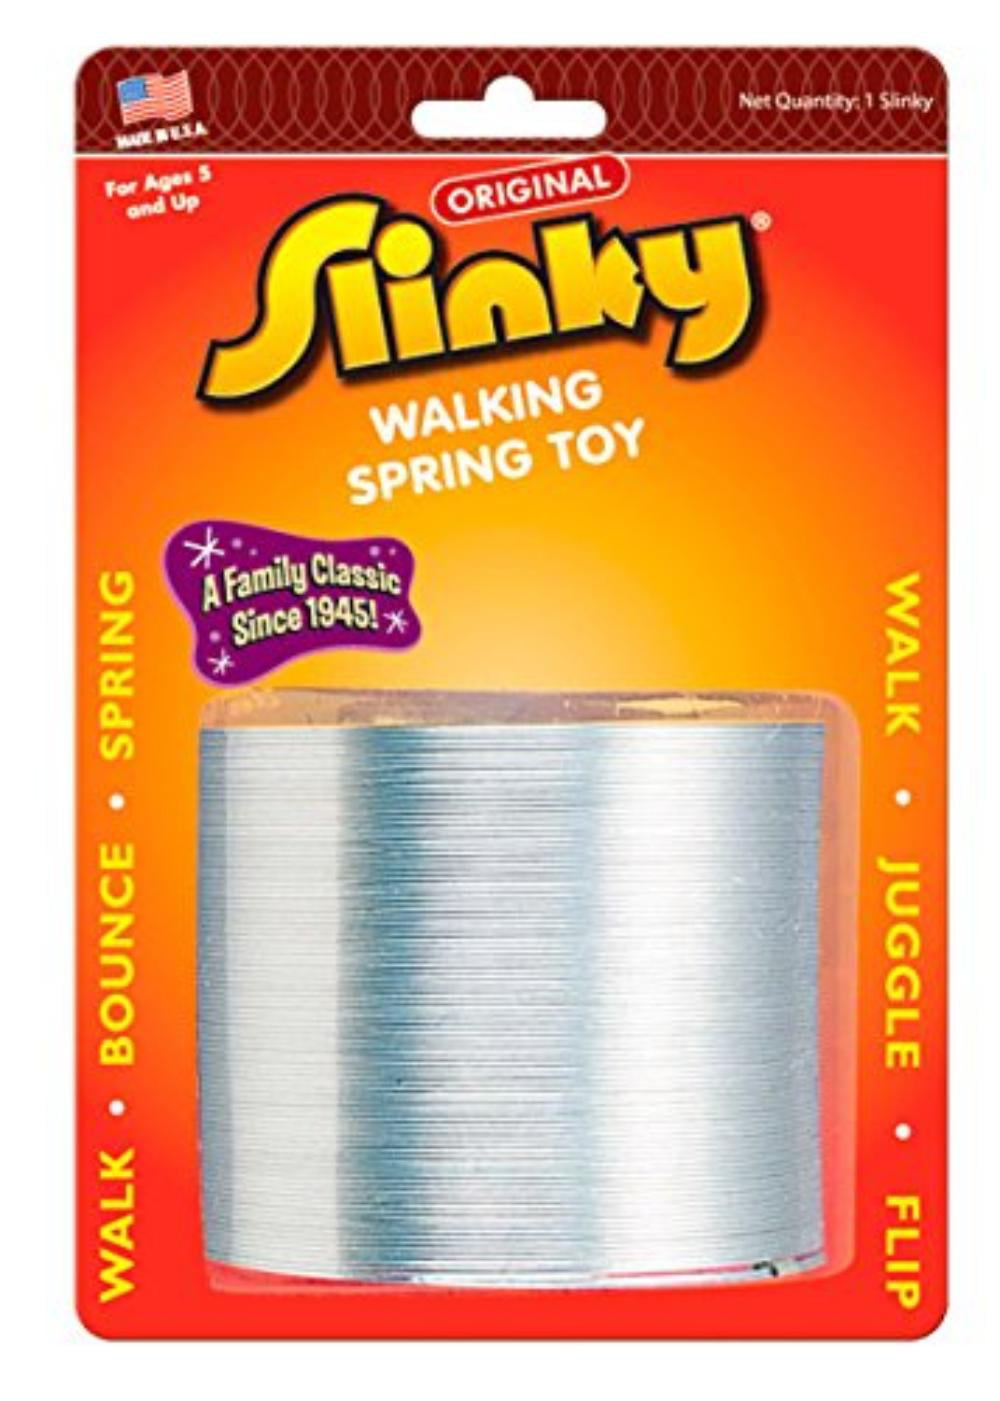 walking slinky